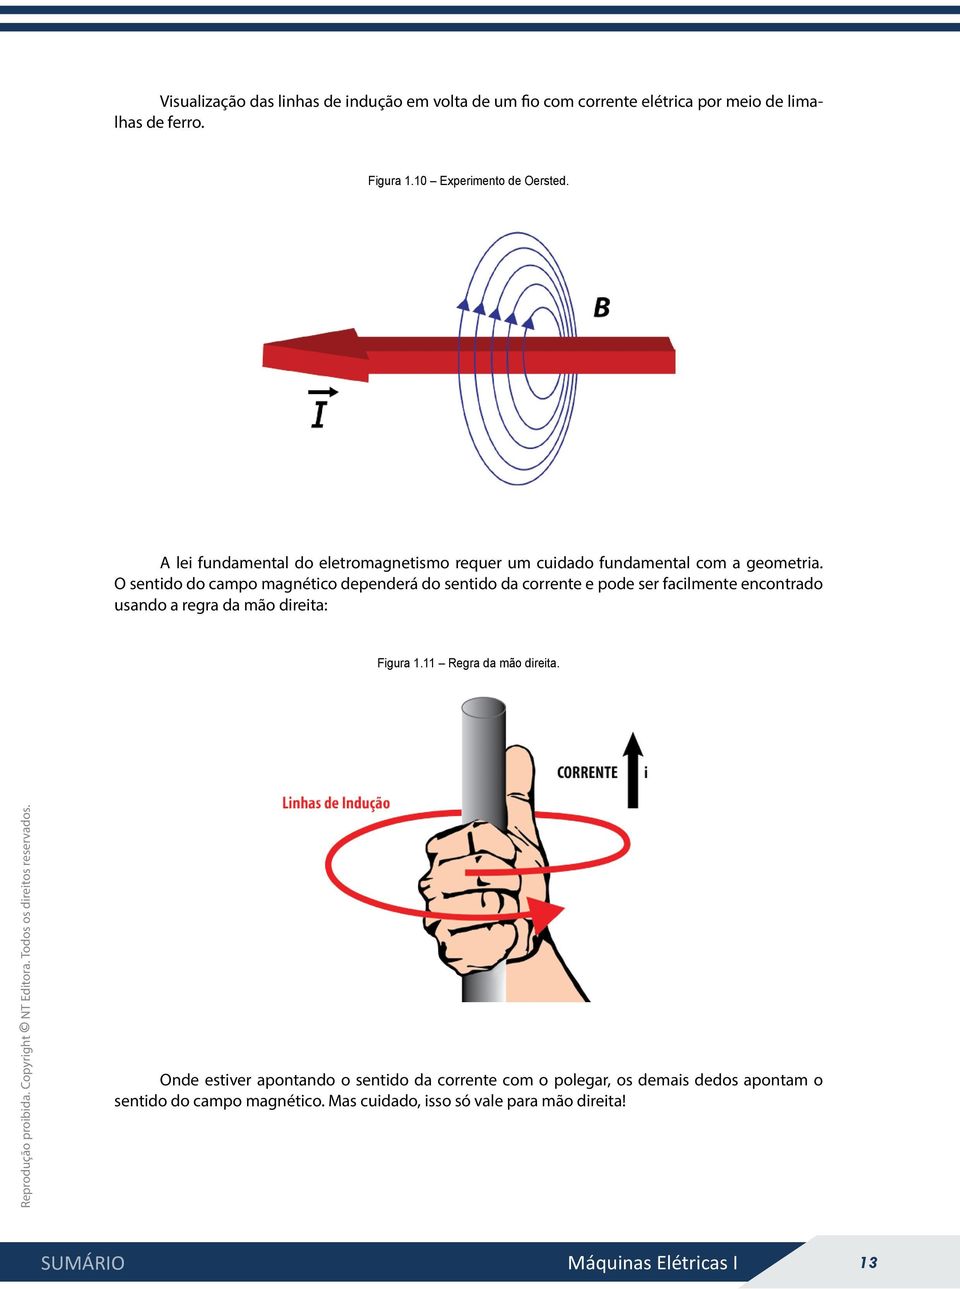 O sentido do campo magnético dependerá do sentido da corrente e pode ser facilmente encontrado usando a regra da mão direita: Figura 1.